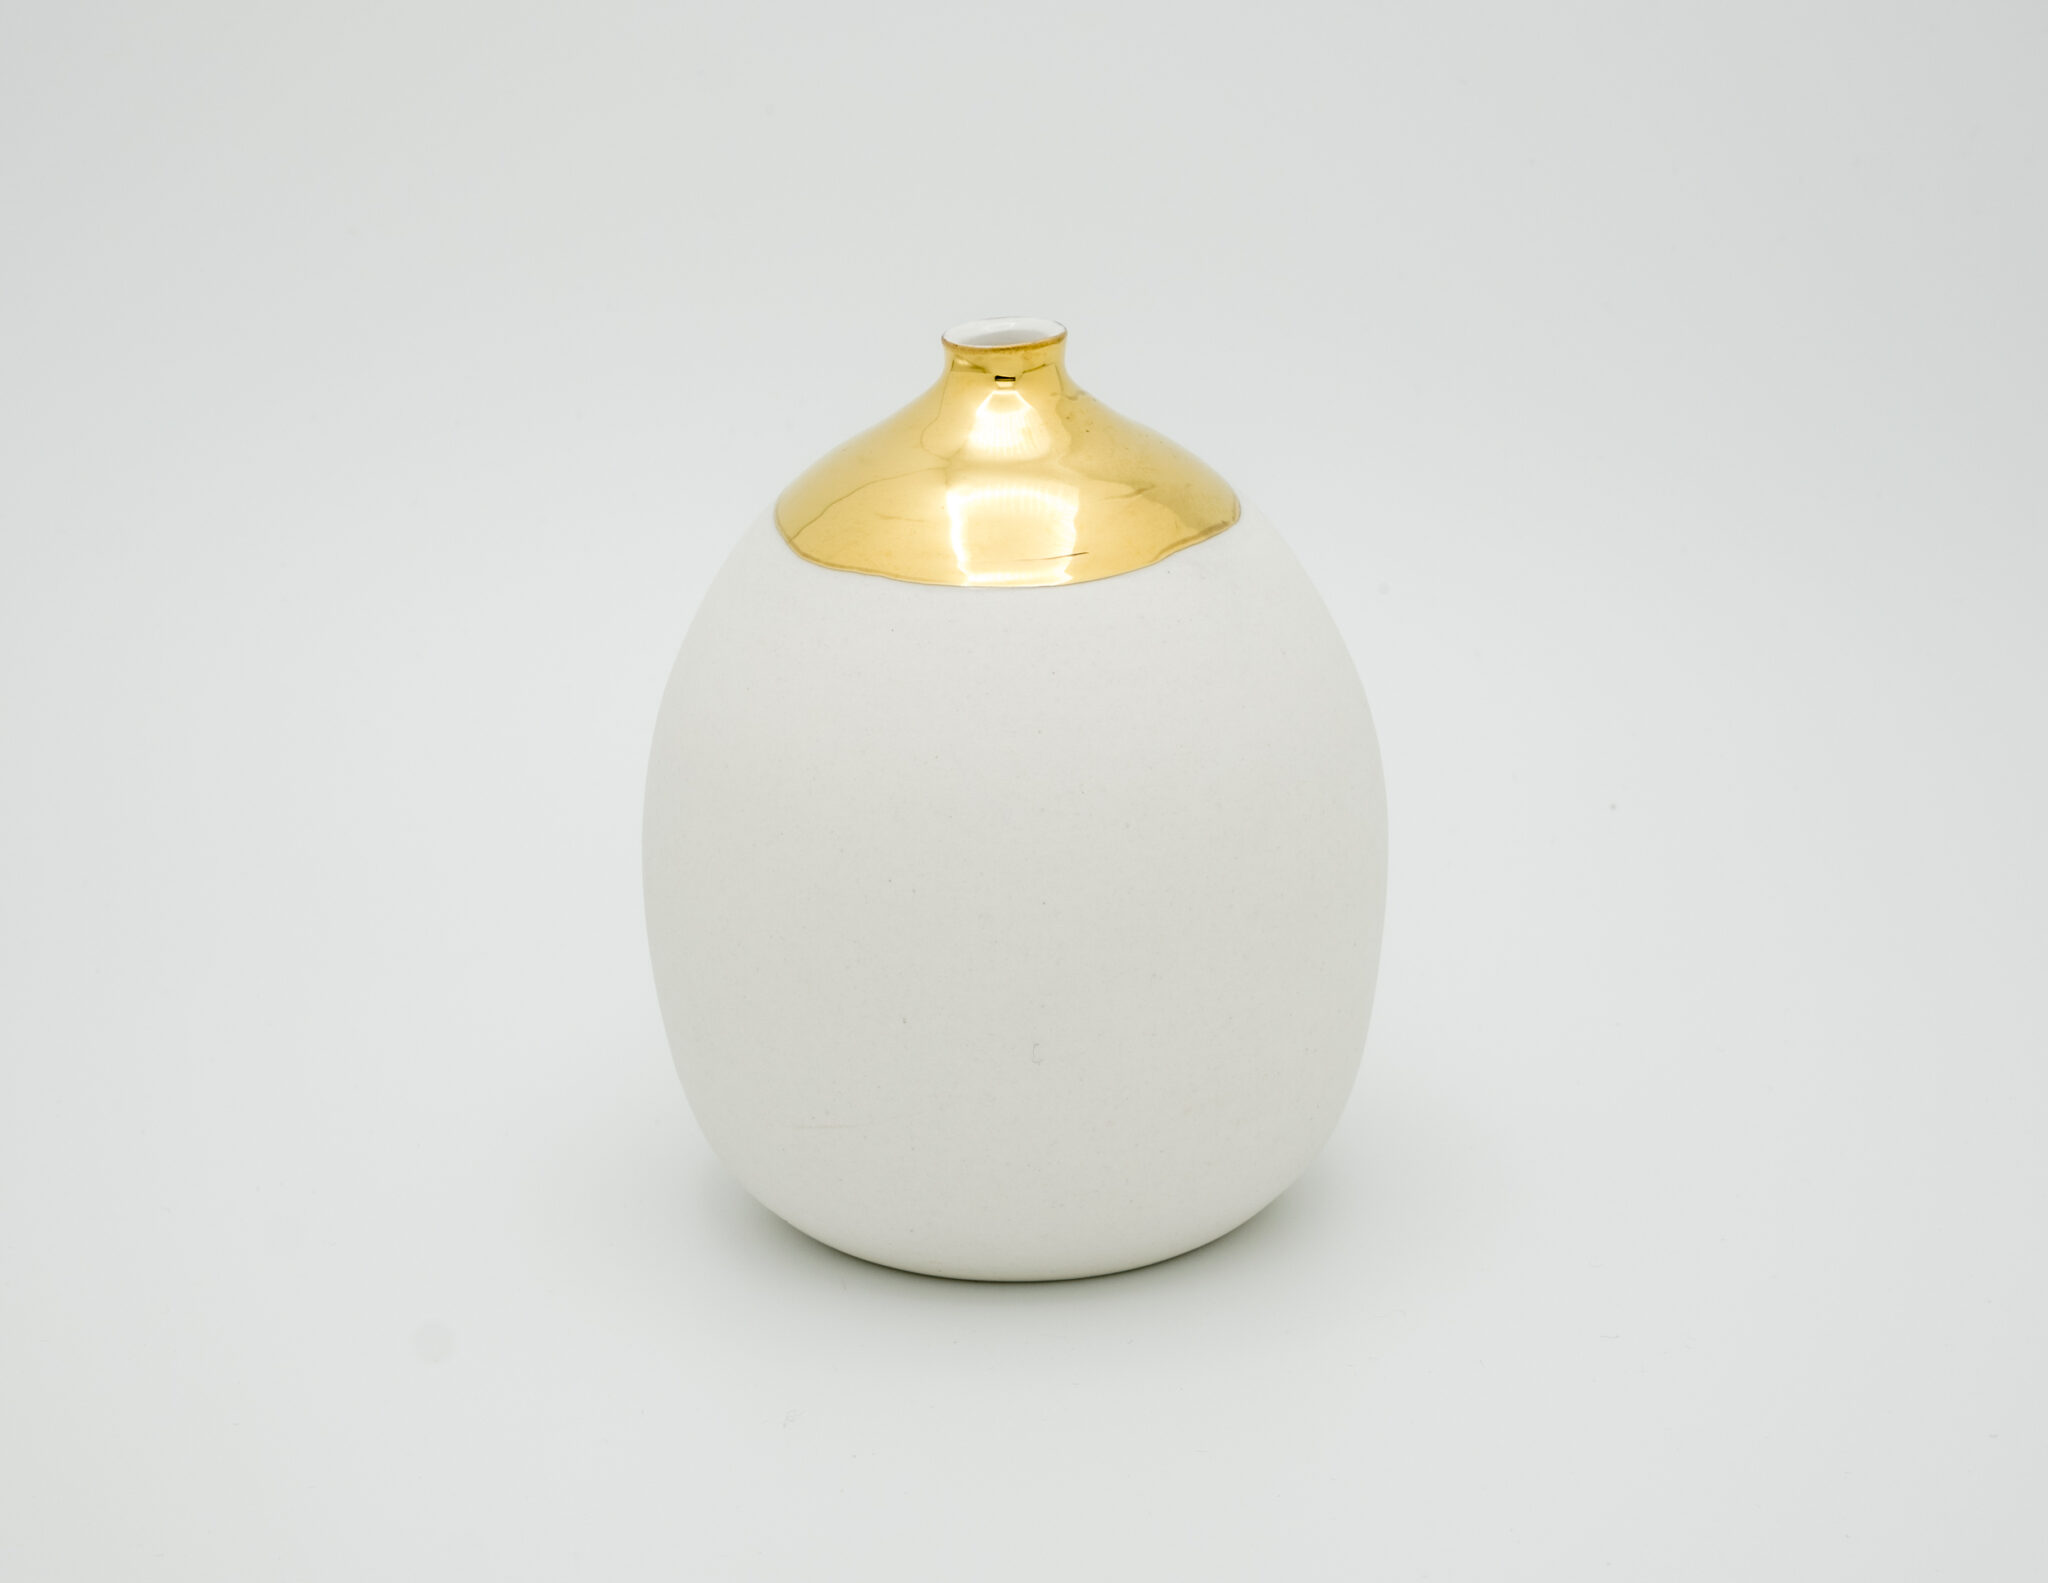 handmade porcelain one flower vase gold